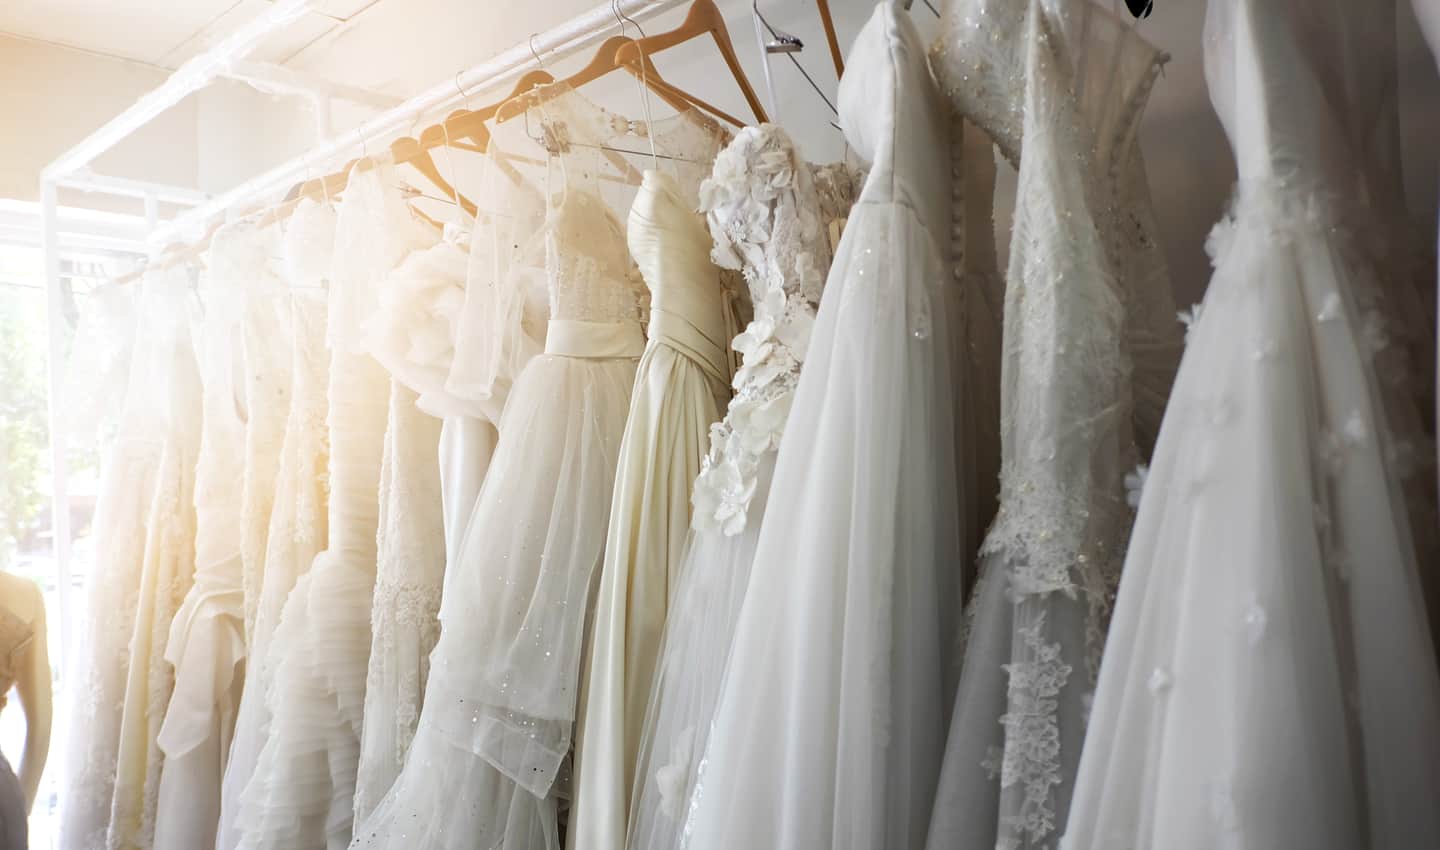  5 лучших мест для продажи свадебных платьев онлайн